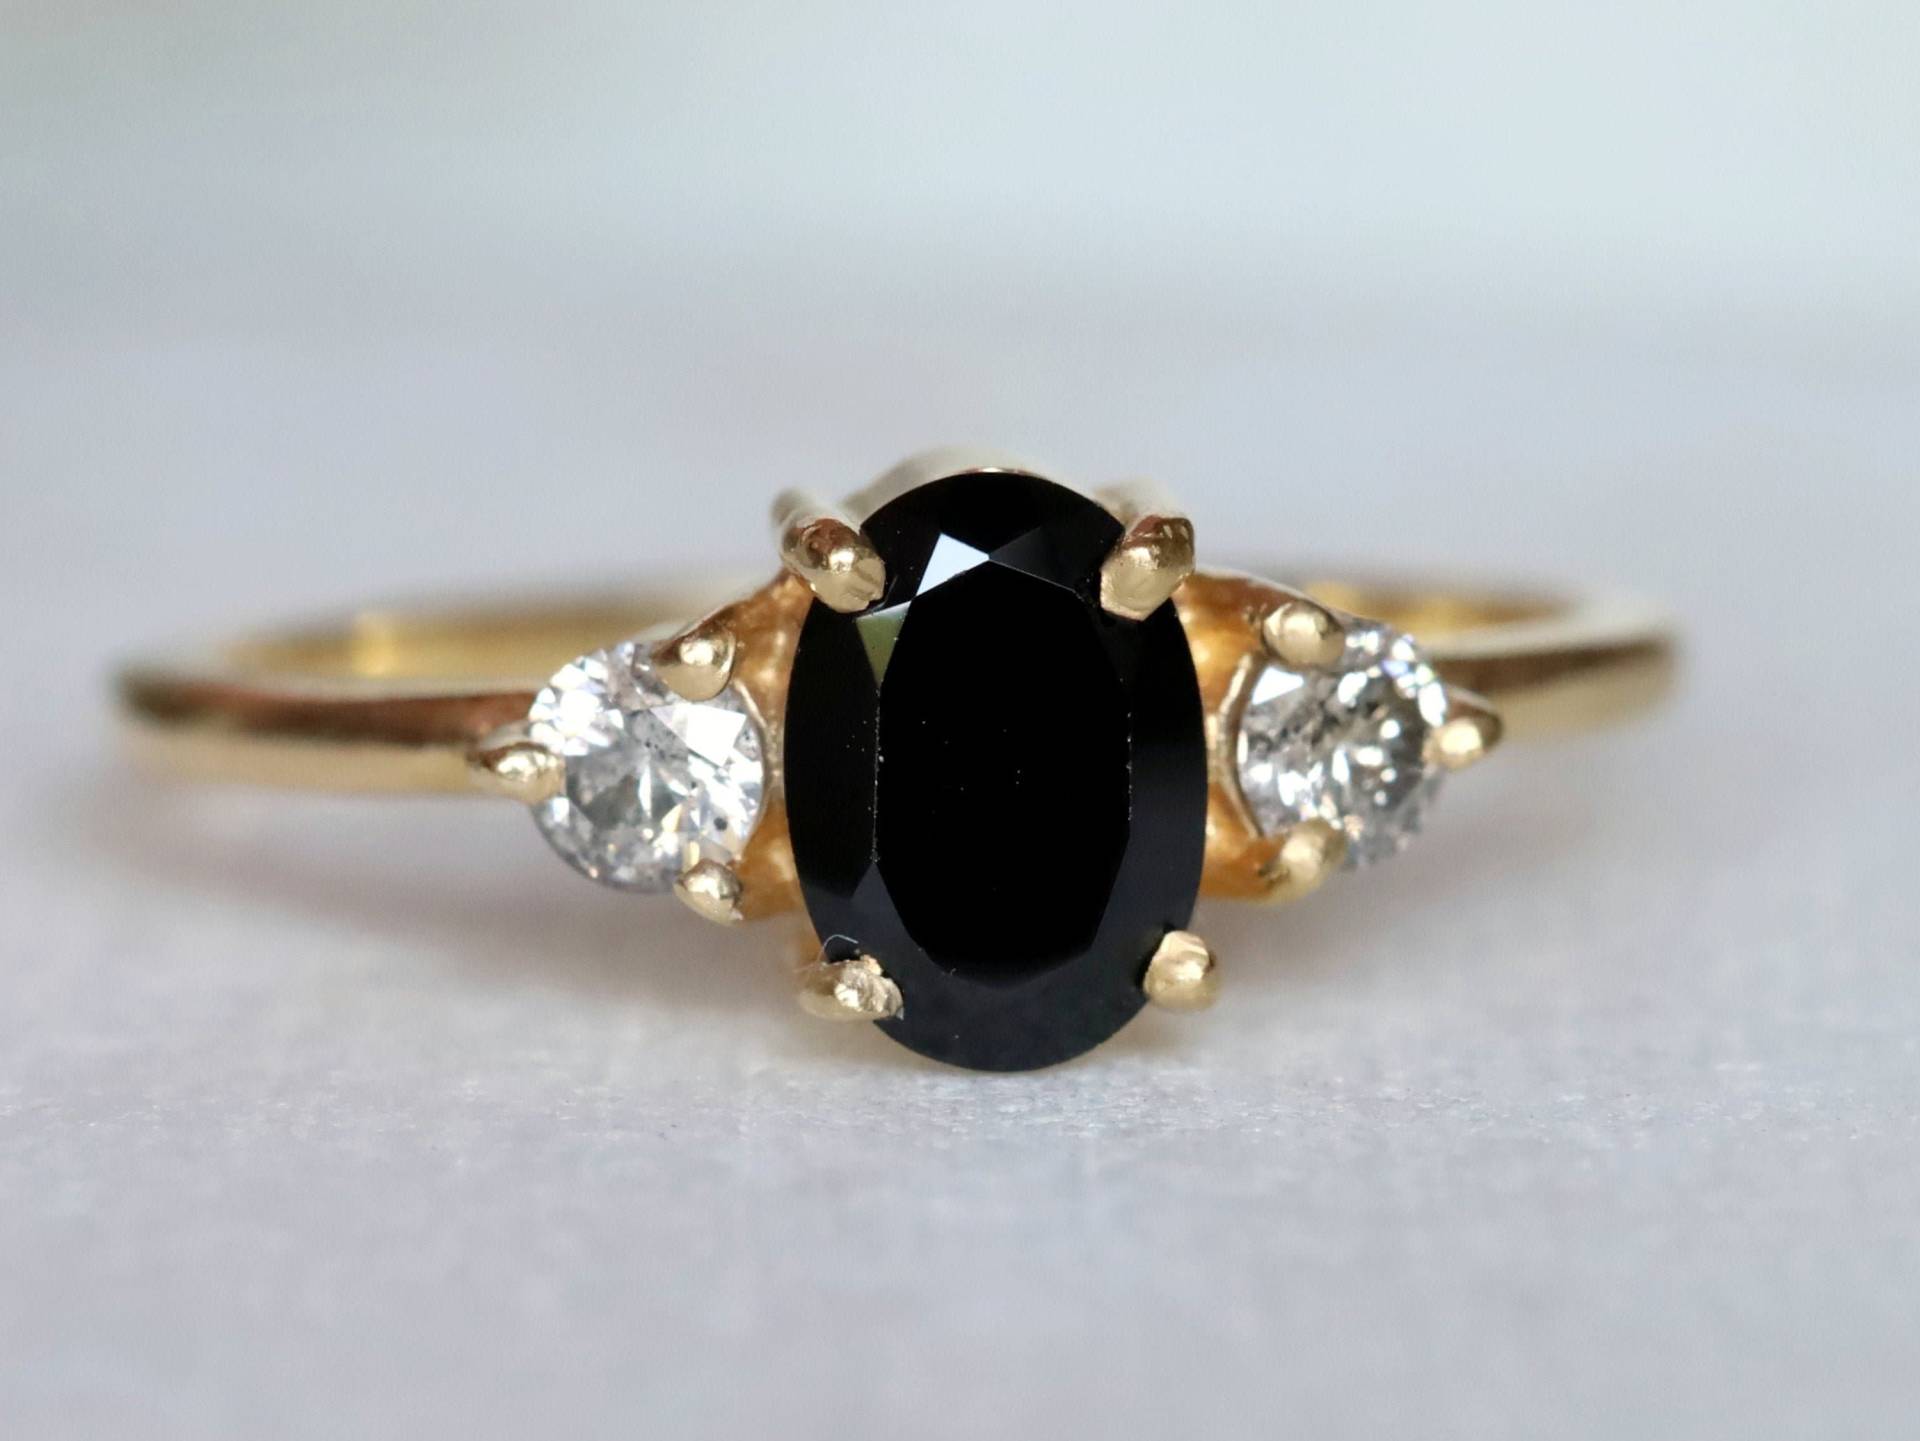 Schwarzer Diamant Ring, Salz Pfeffer Grauer Diamant, Gold Schwarzer Verlobungsring, 1 Karat Ring von VimleshBadaya